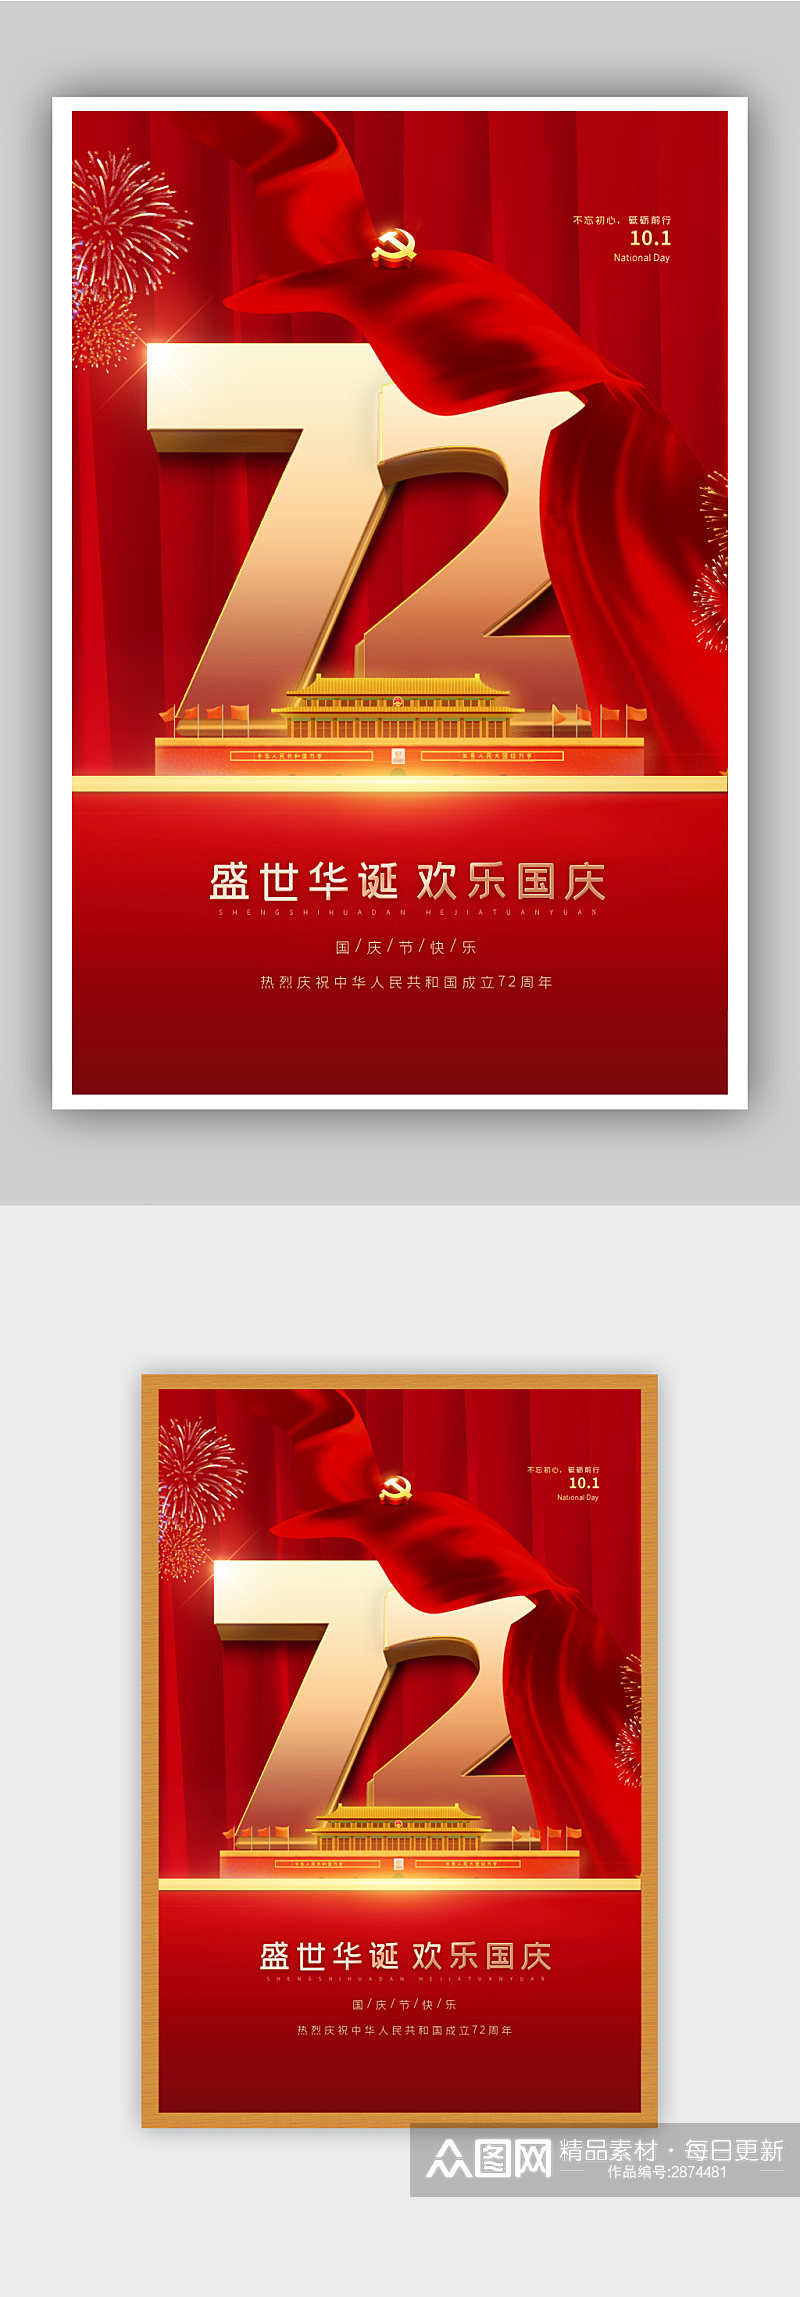 红色喜庆国庆节海报素材